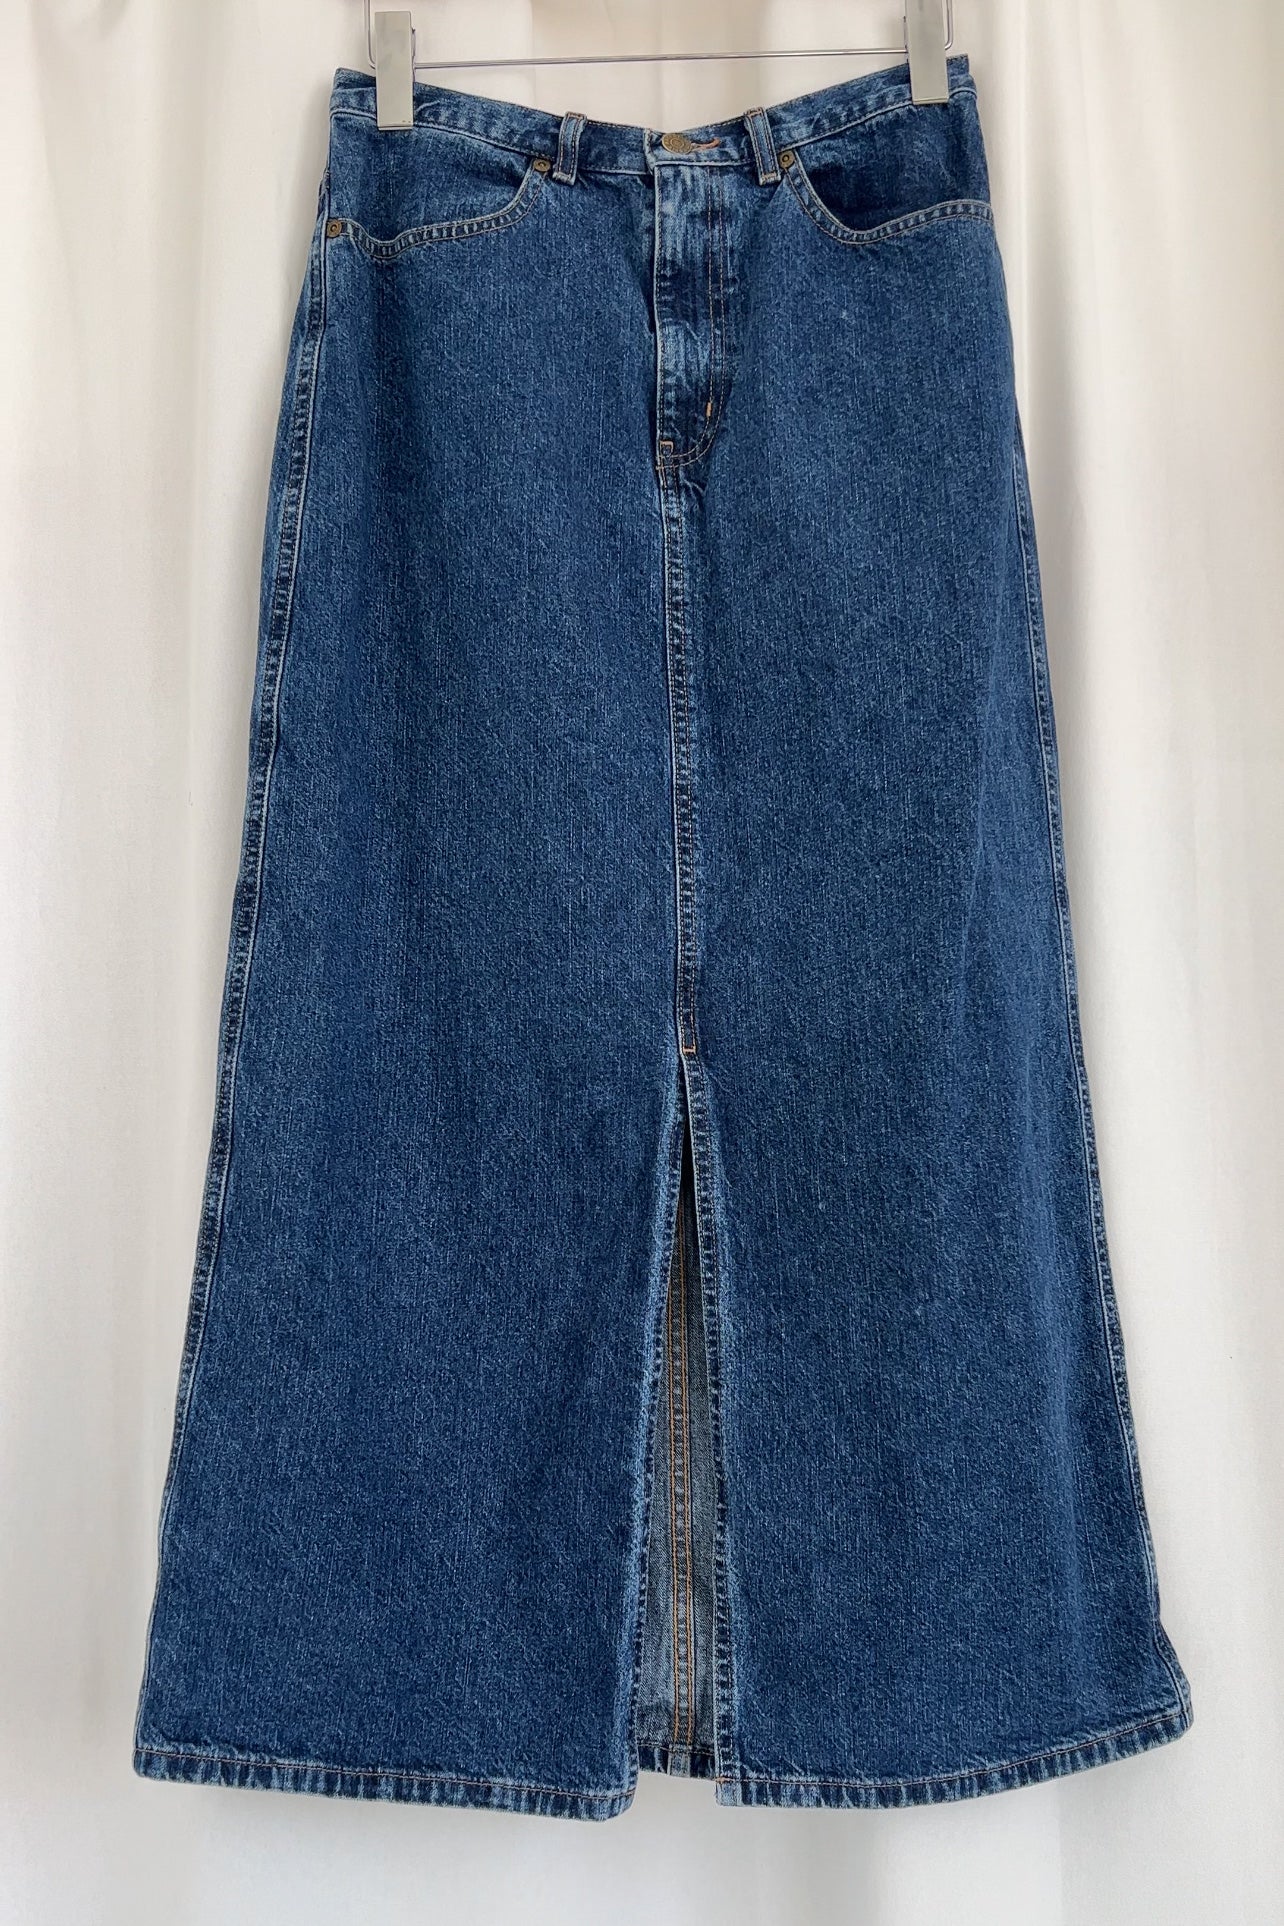 Vintage 90s Dark Wash Denim Maxi Skirt